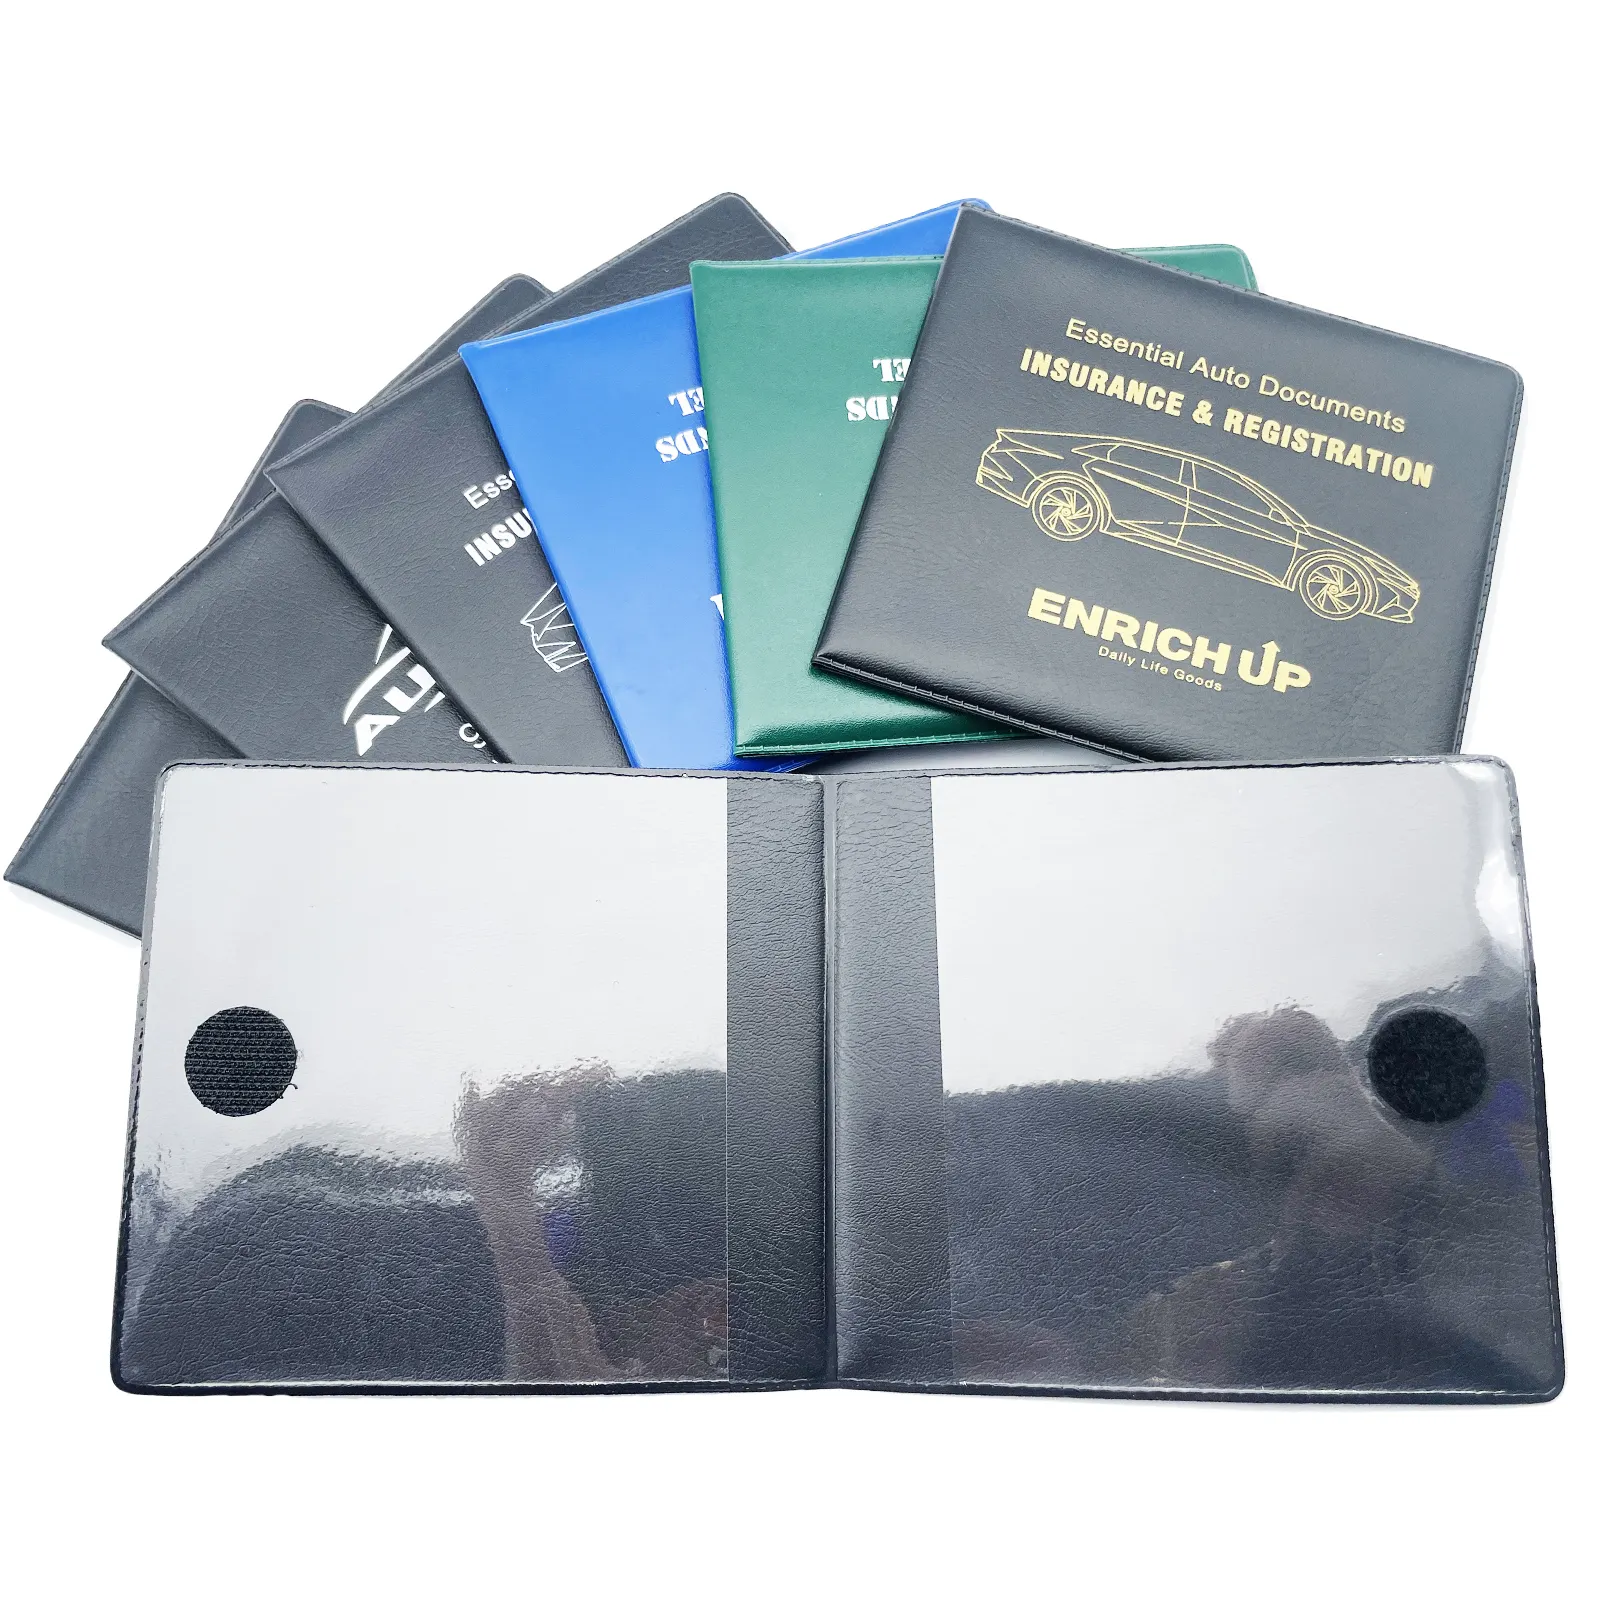 कवर पर कार्ड पॉकेट के साथ पीवीसी ट्रैवल दस्तावेज़ धारक कार पंजीकरण कार्ड दस्तावेज़ वॉलेट